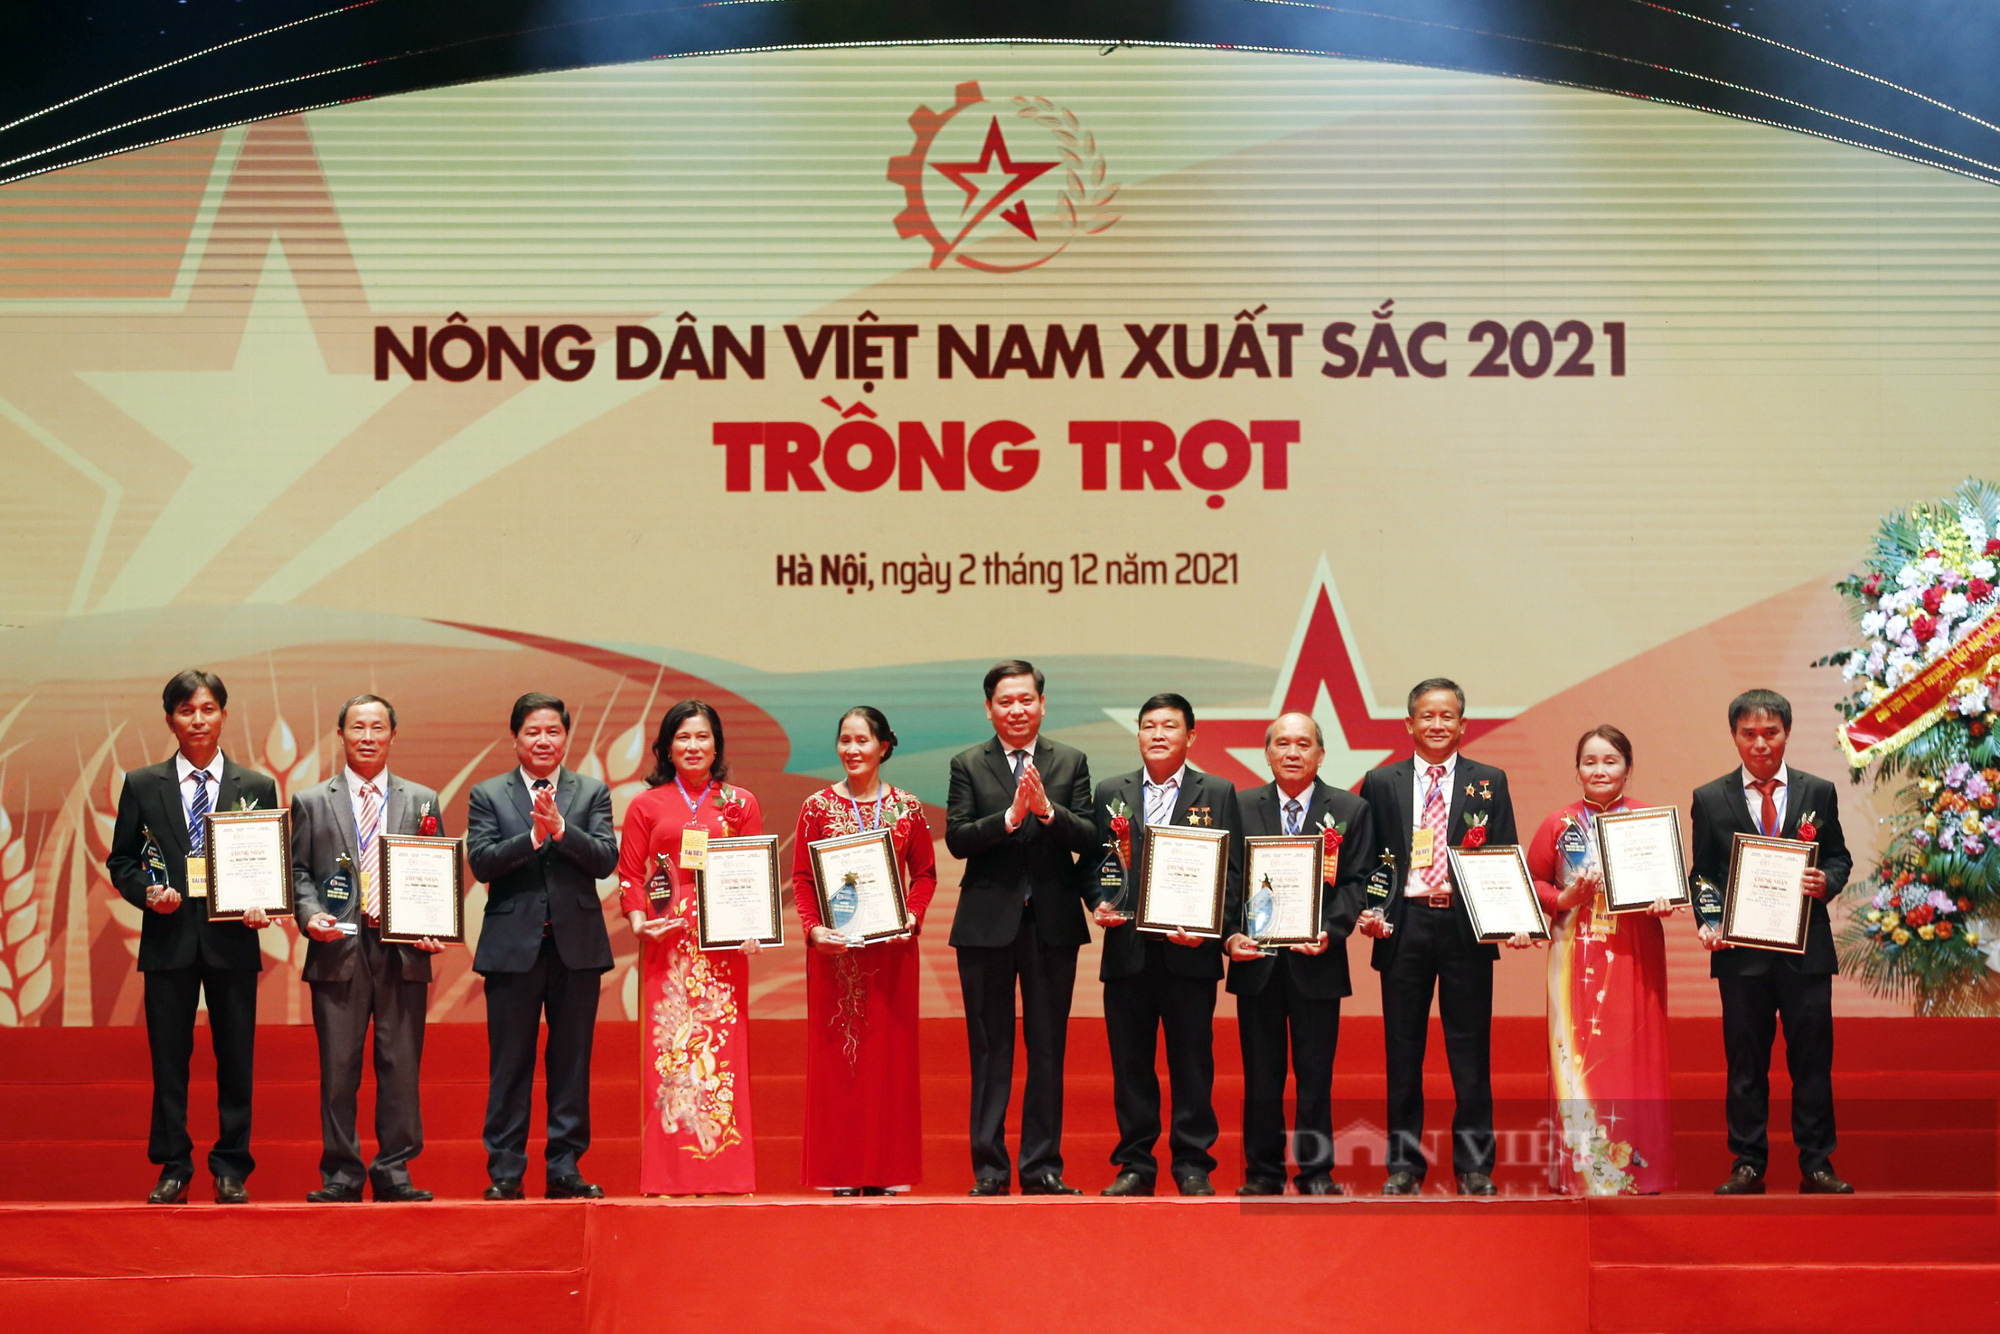 Toàn cảnh đêm Tôn vinh 63 nông dân Việt Nam xuất sắc năm 2021 - Ảnh 8.